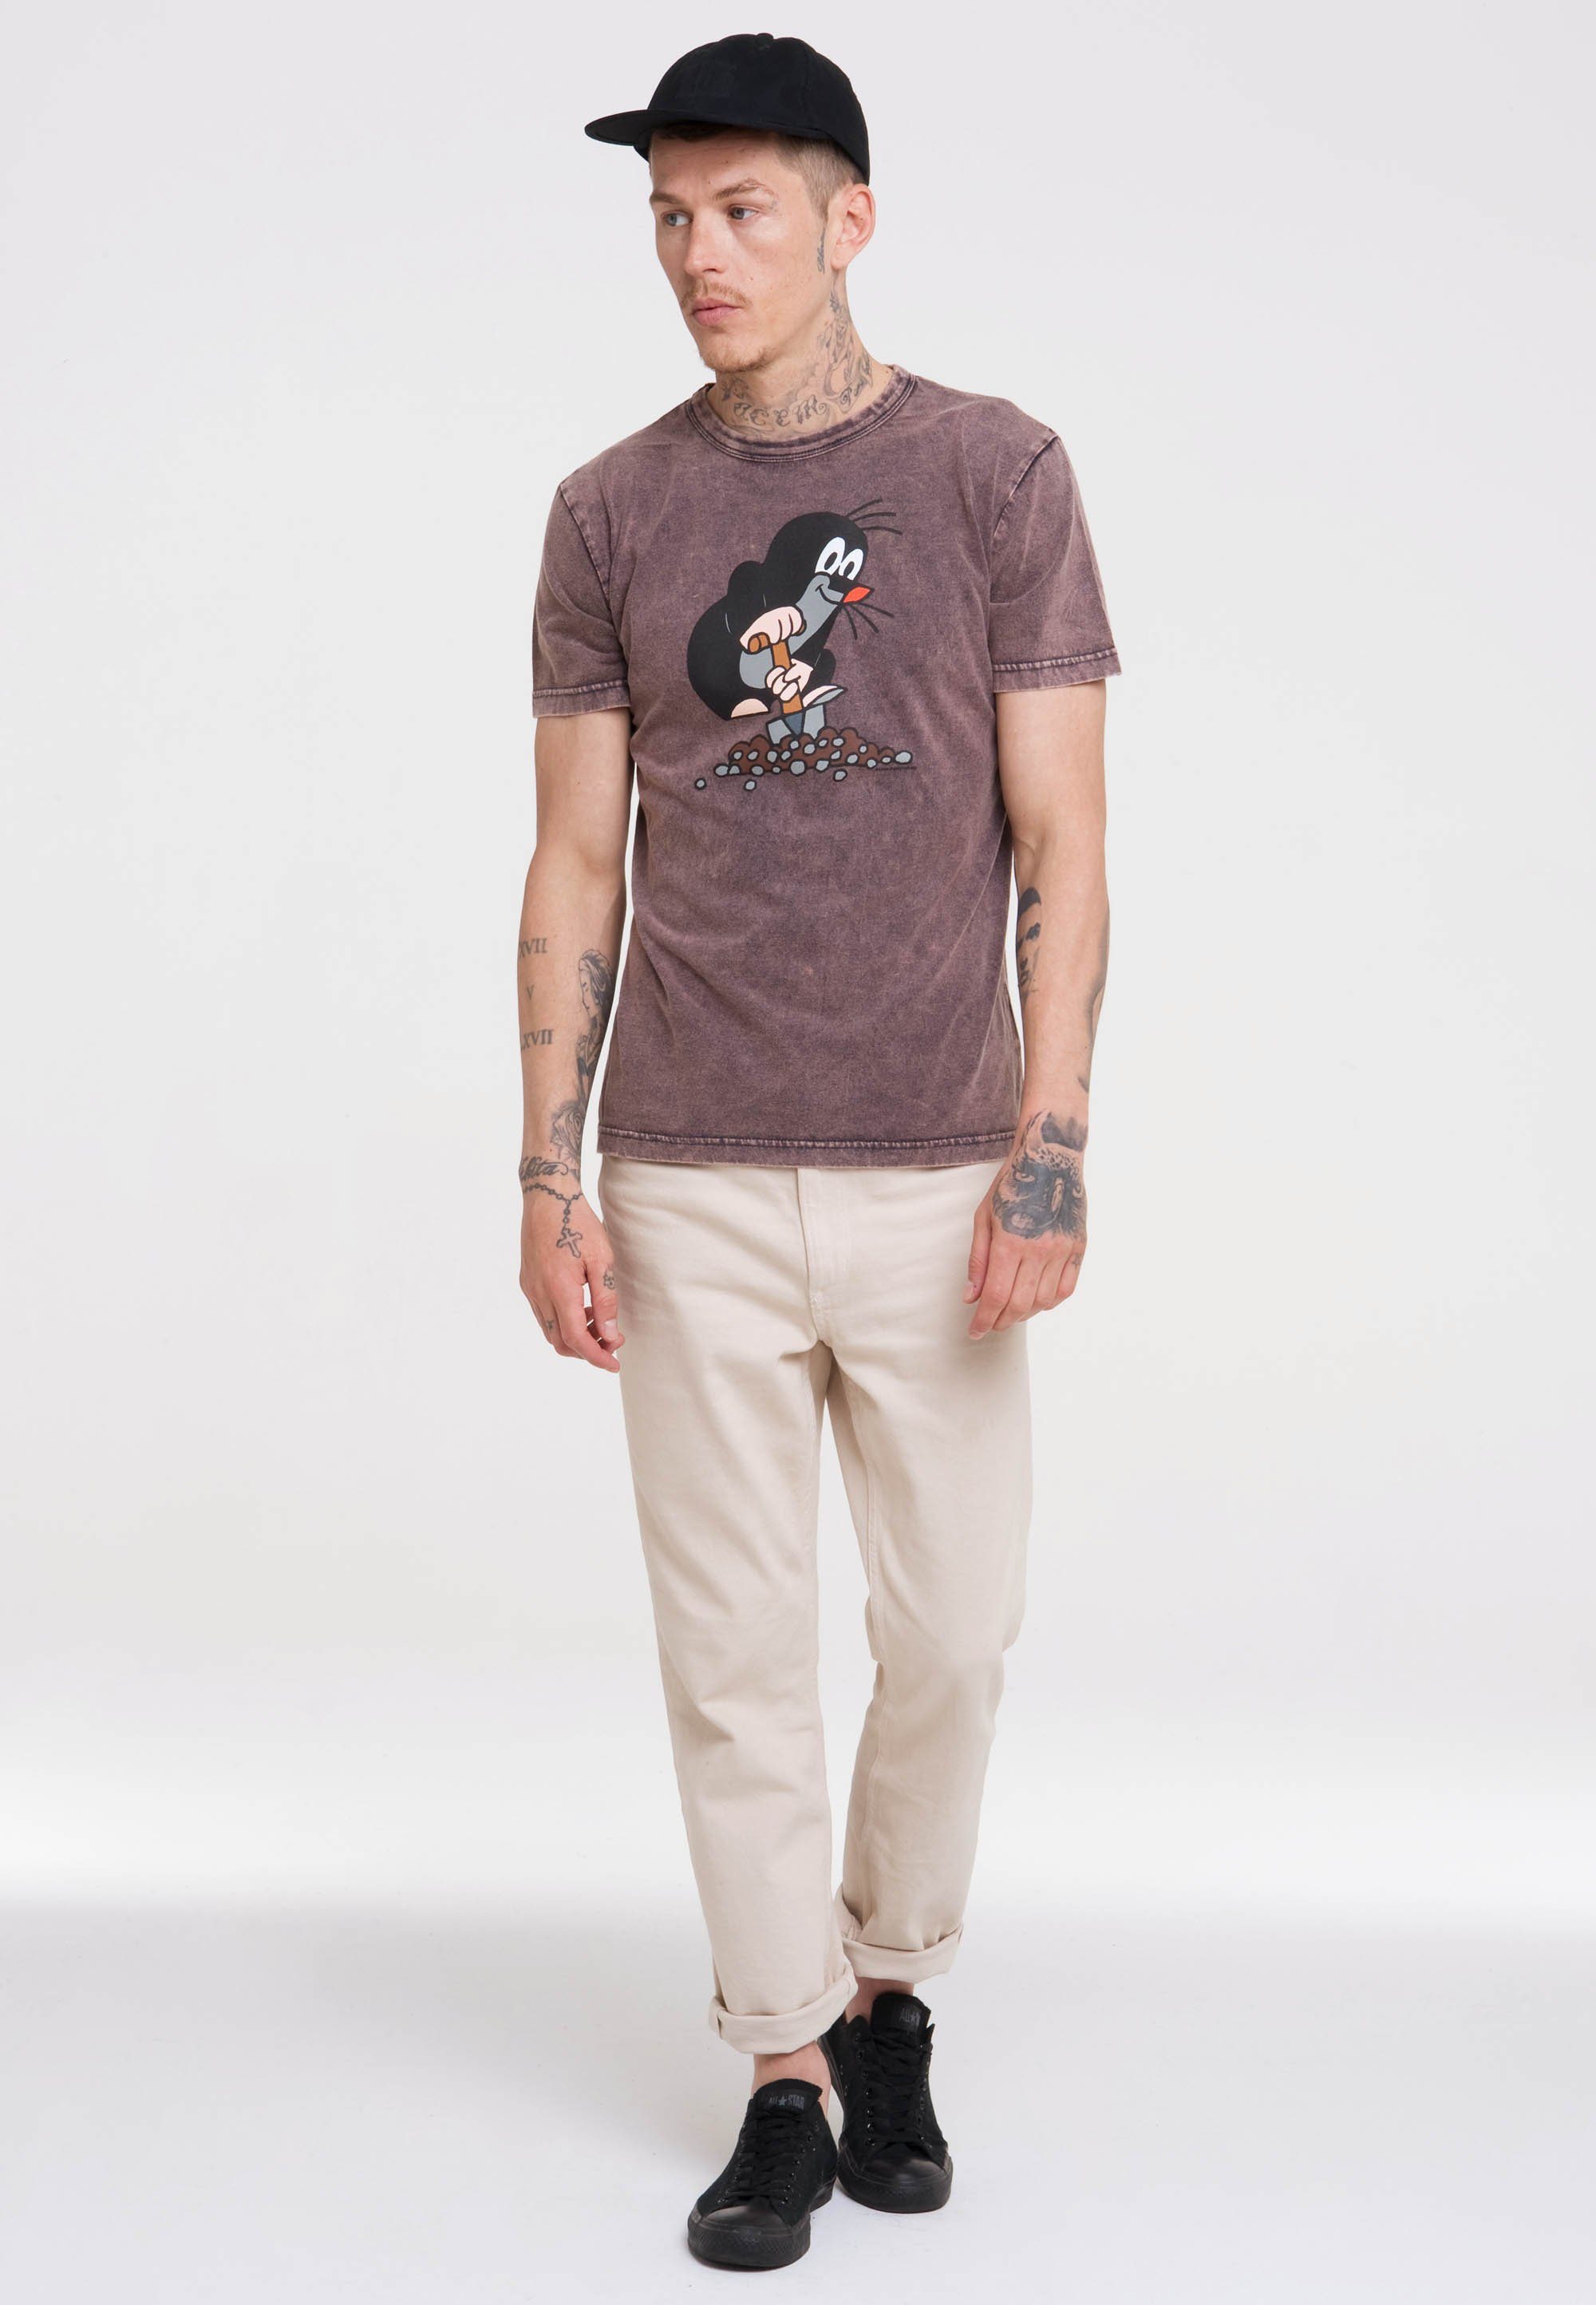 LOGOSHIRT T-Shirt Der kleine violett lizenziertem Print Maulwurf mit